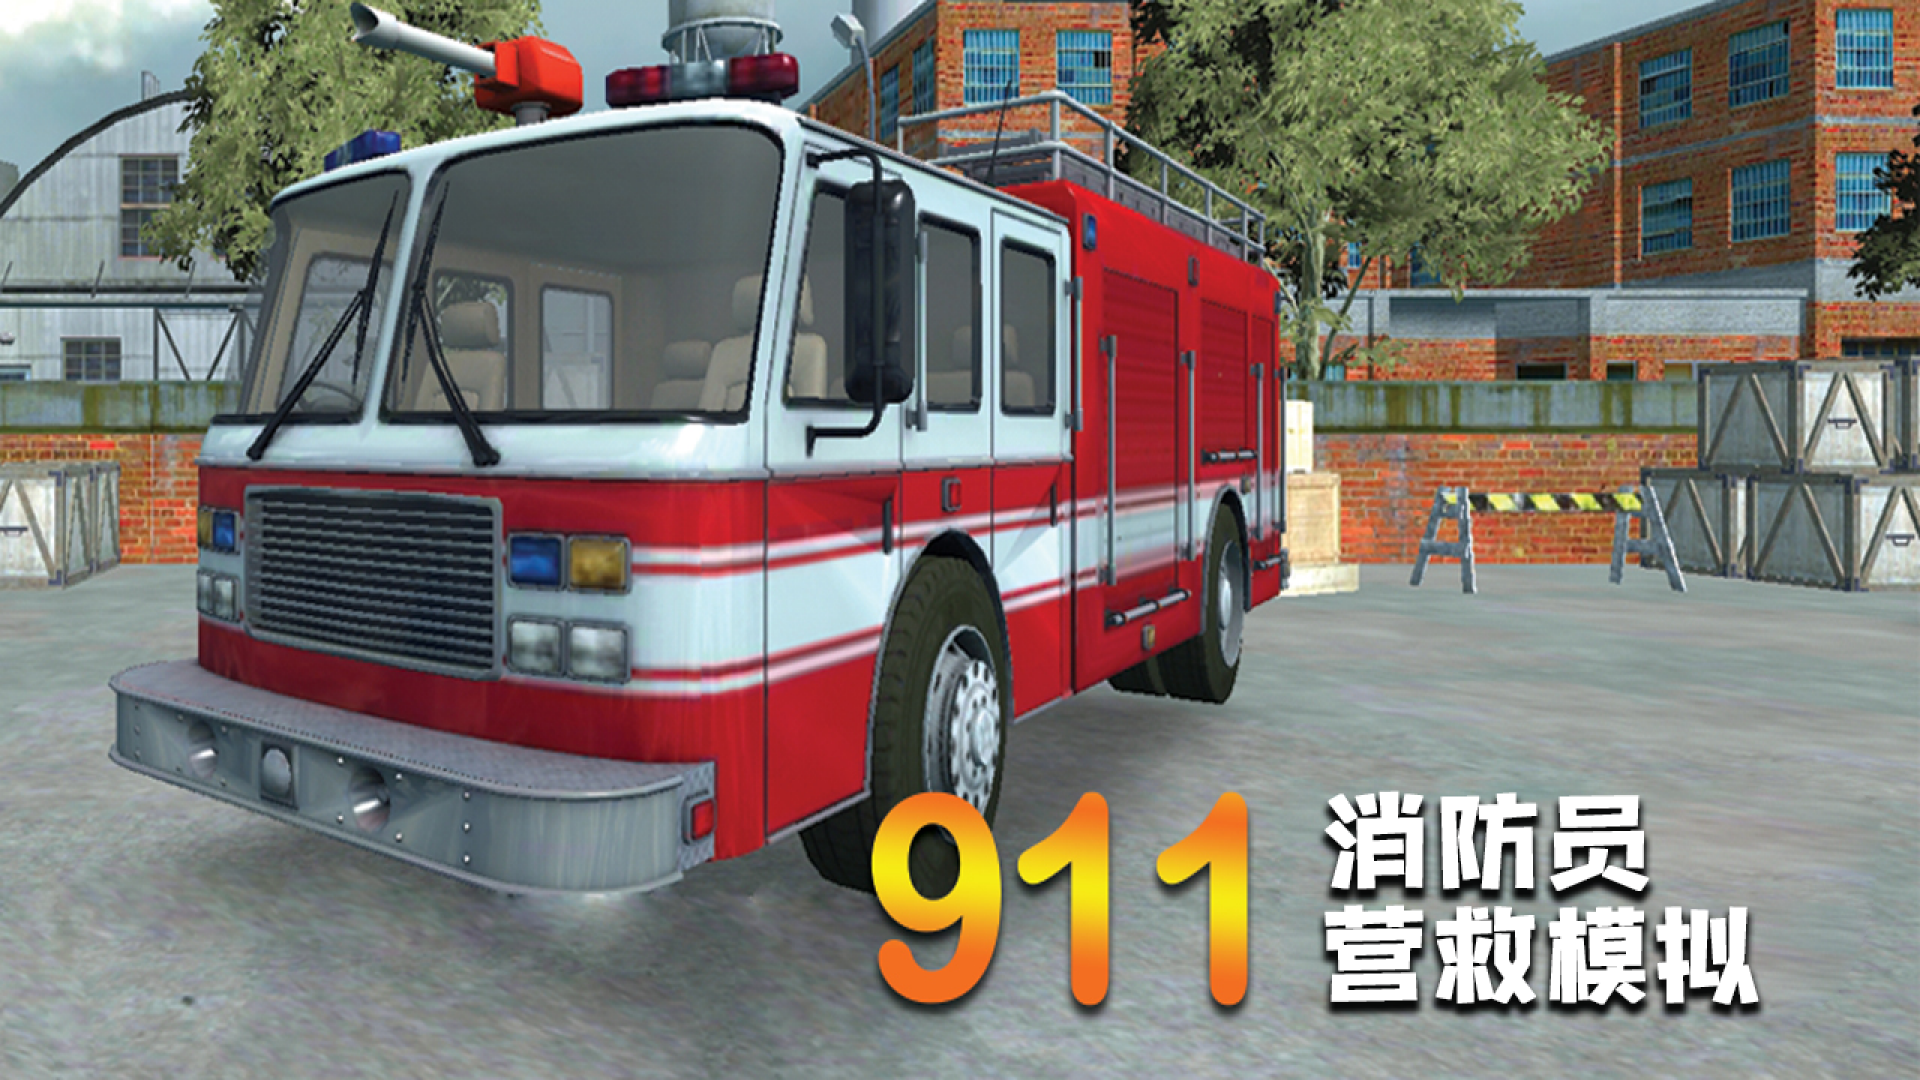 Banner of Simulación de rescate de bomberos 1.01